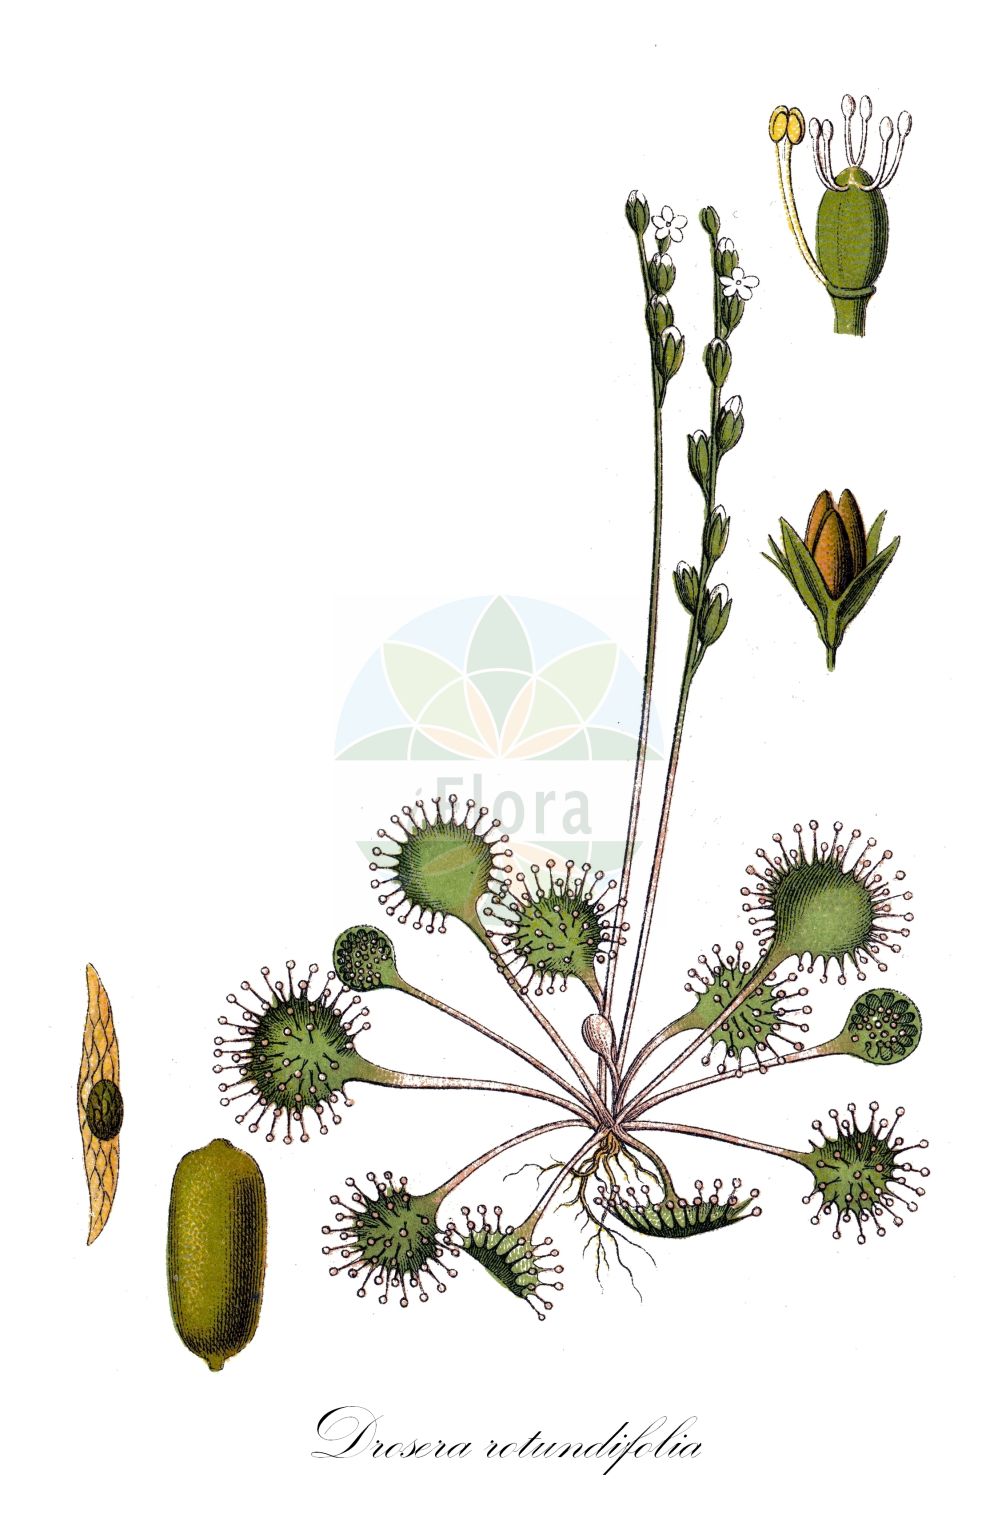 Historische Abbildung von Drosera rotundifolia (Rundblättriger Sonnentau - Round-leaved Sundew). ---- Historical Drawing of Drosera rotundifolia (Rundblättriger Sonnentau - Round-leaved Sundew).(Drosera rotundifolia,Rundblättriger Sonnentau,Round-leaved Sundew,Drosera corsica,Drosera rotundifolia,Rundblaettriger Sonnentau,Round-leaved Sundew,Common Sundew,Roundleaf Sundew,Sundew,Drosera,Sonnentau,Sundew,Droseraceae,Sonnentaugewächse,Sundew family,Sturm (1796f))